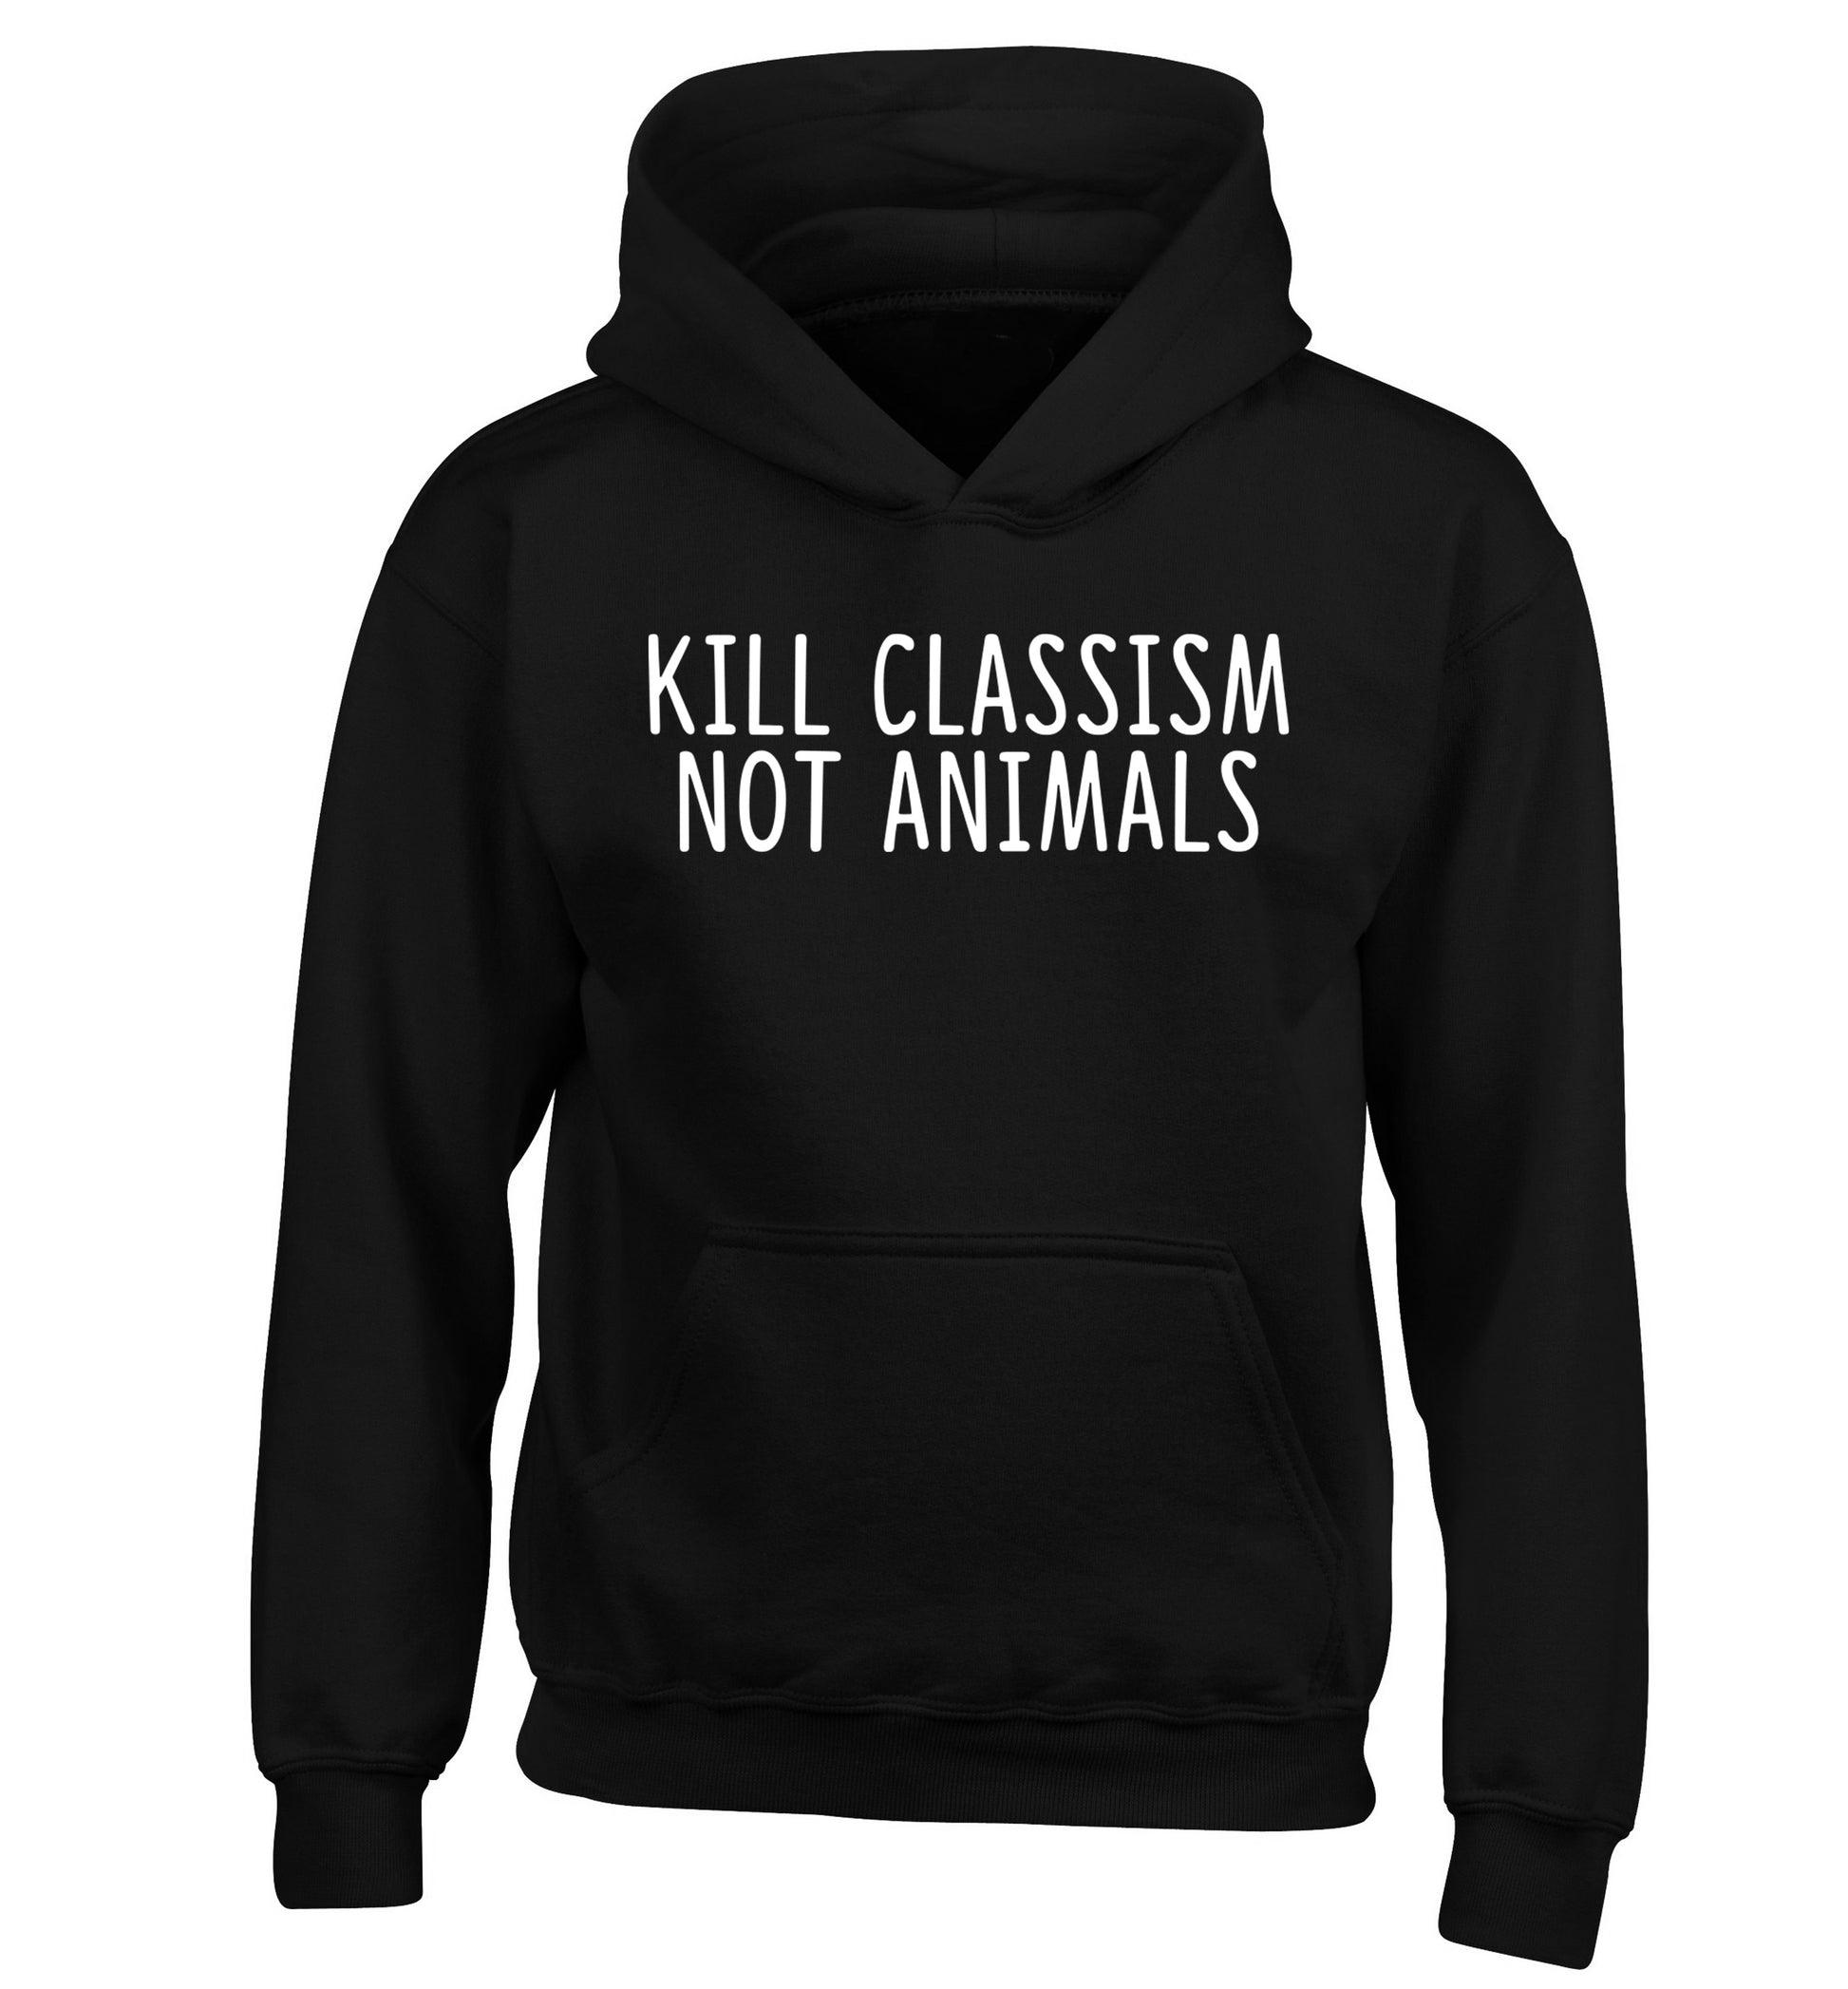 Kill Classism Not Animals children's black hoodie 12-13 Years